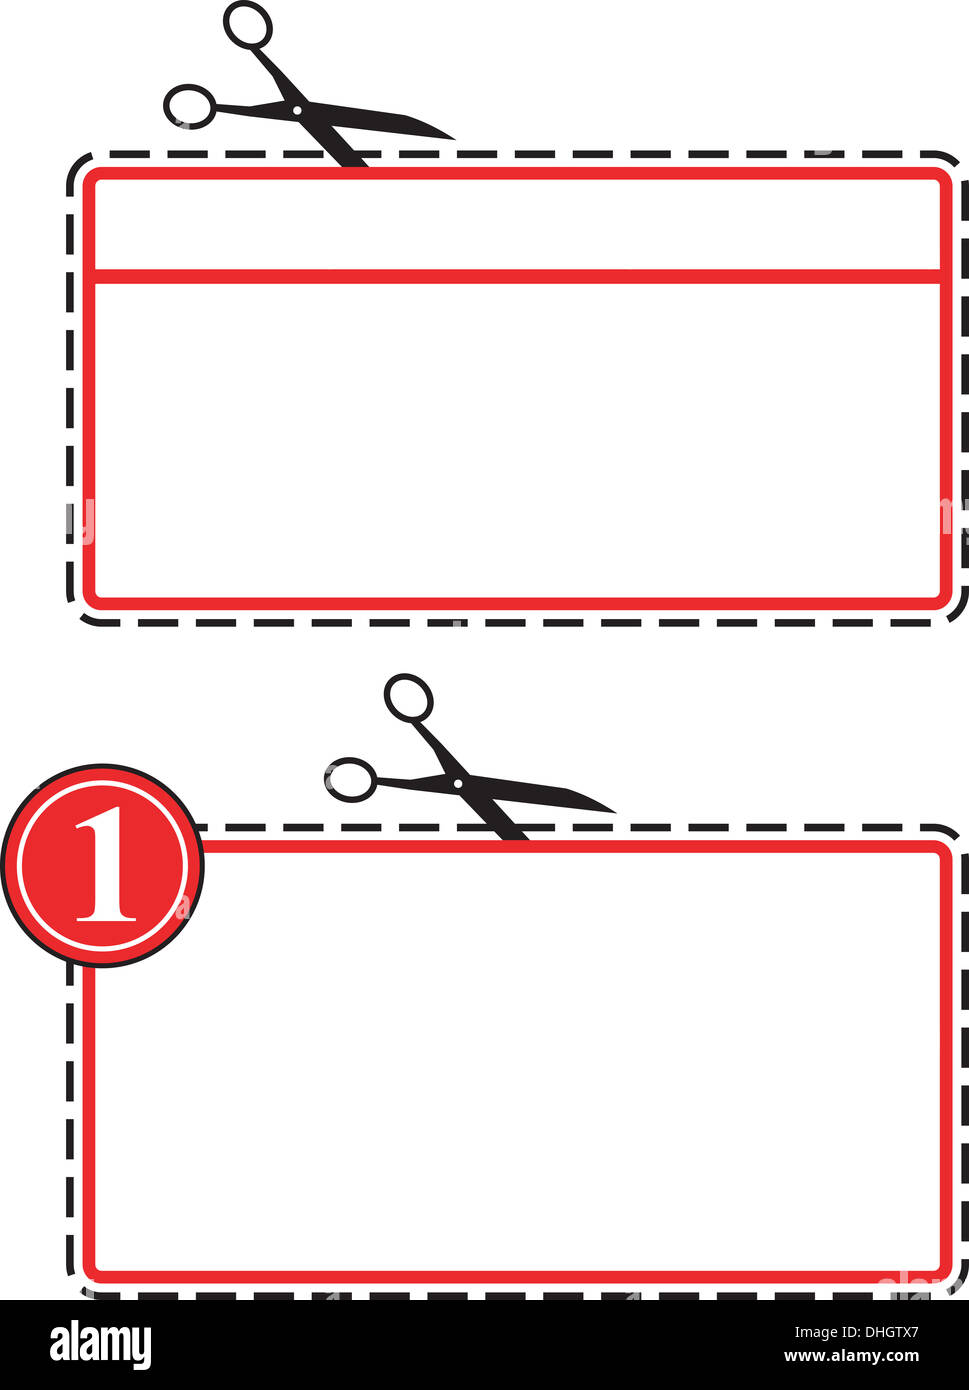 Illustration du coupon de réduction d'être coupées avec une paire de ciseaux sur la ligne pointillée isolées sur fond blanc Banque D'Images